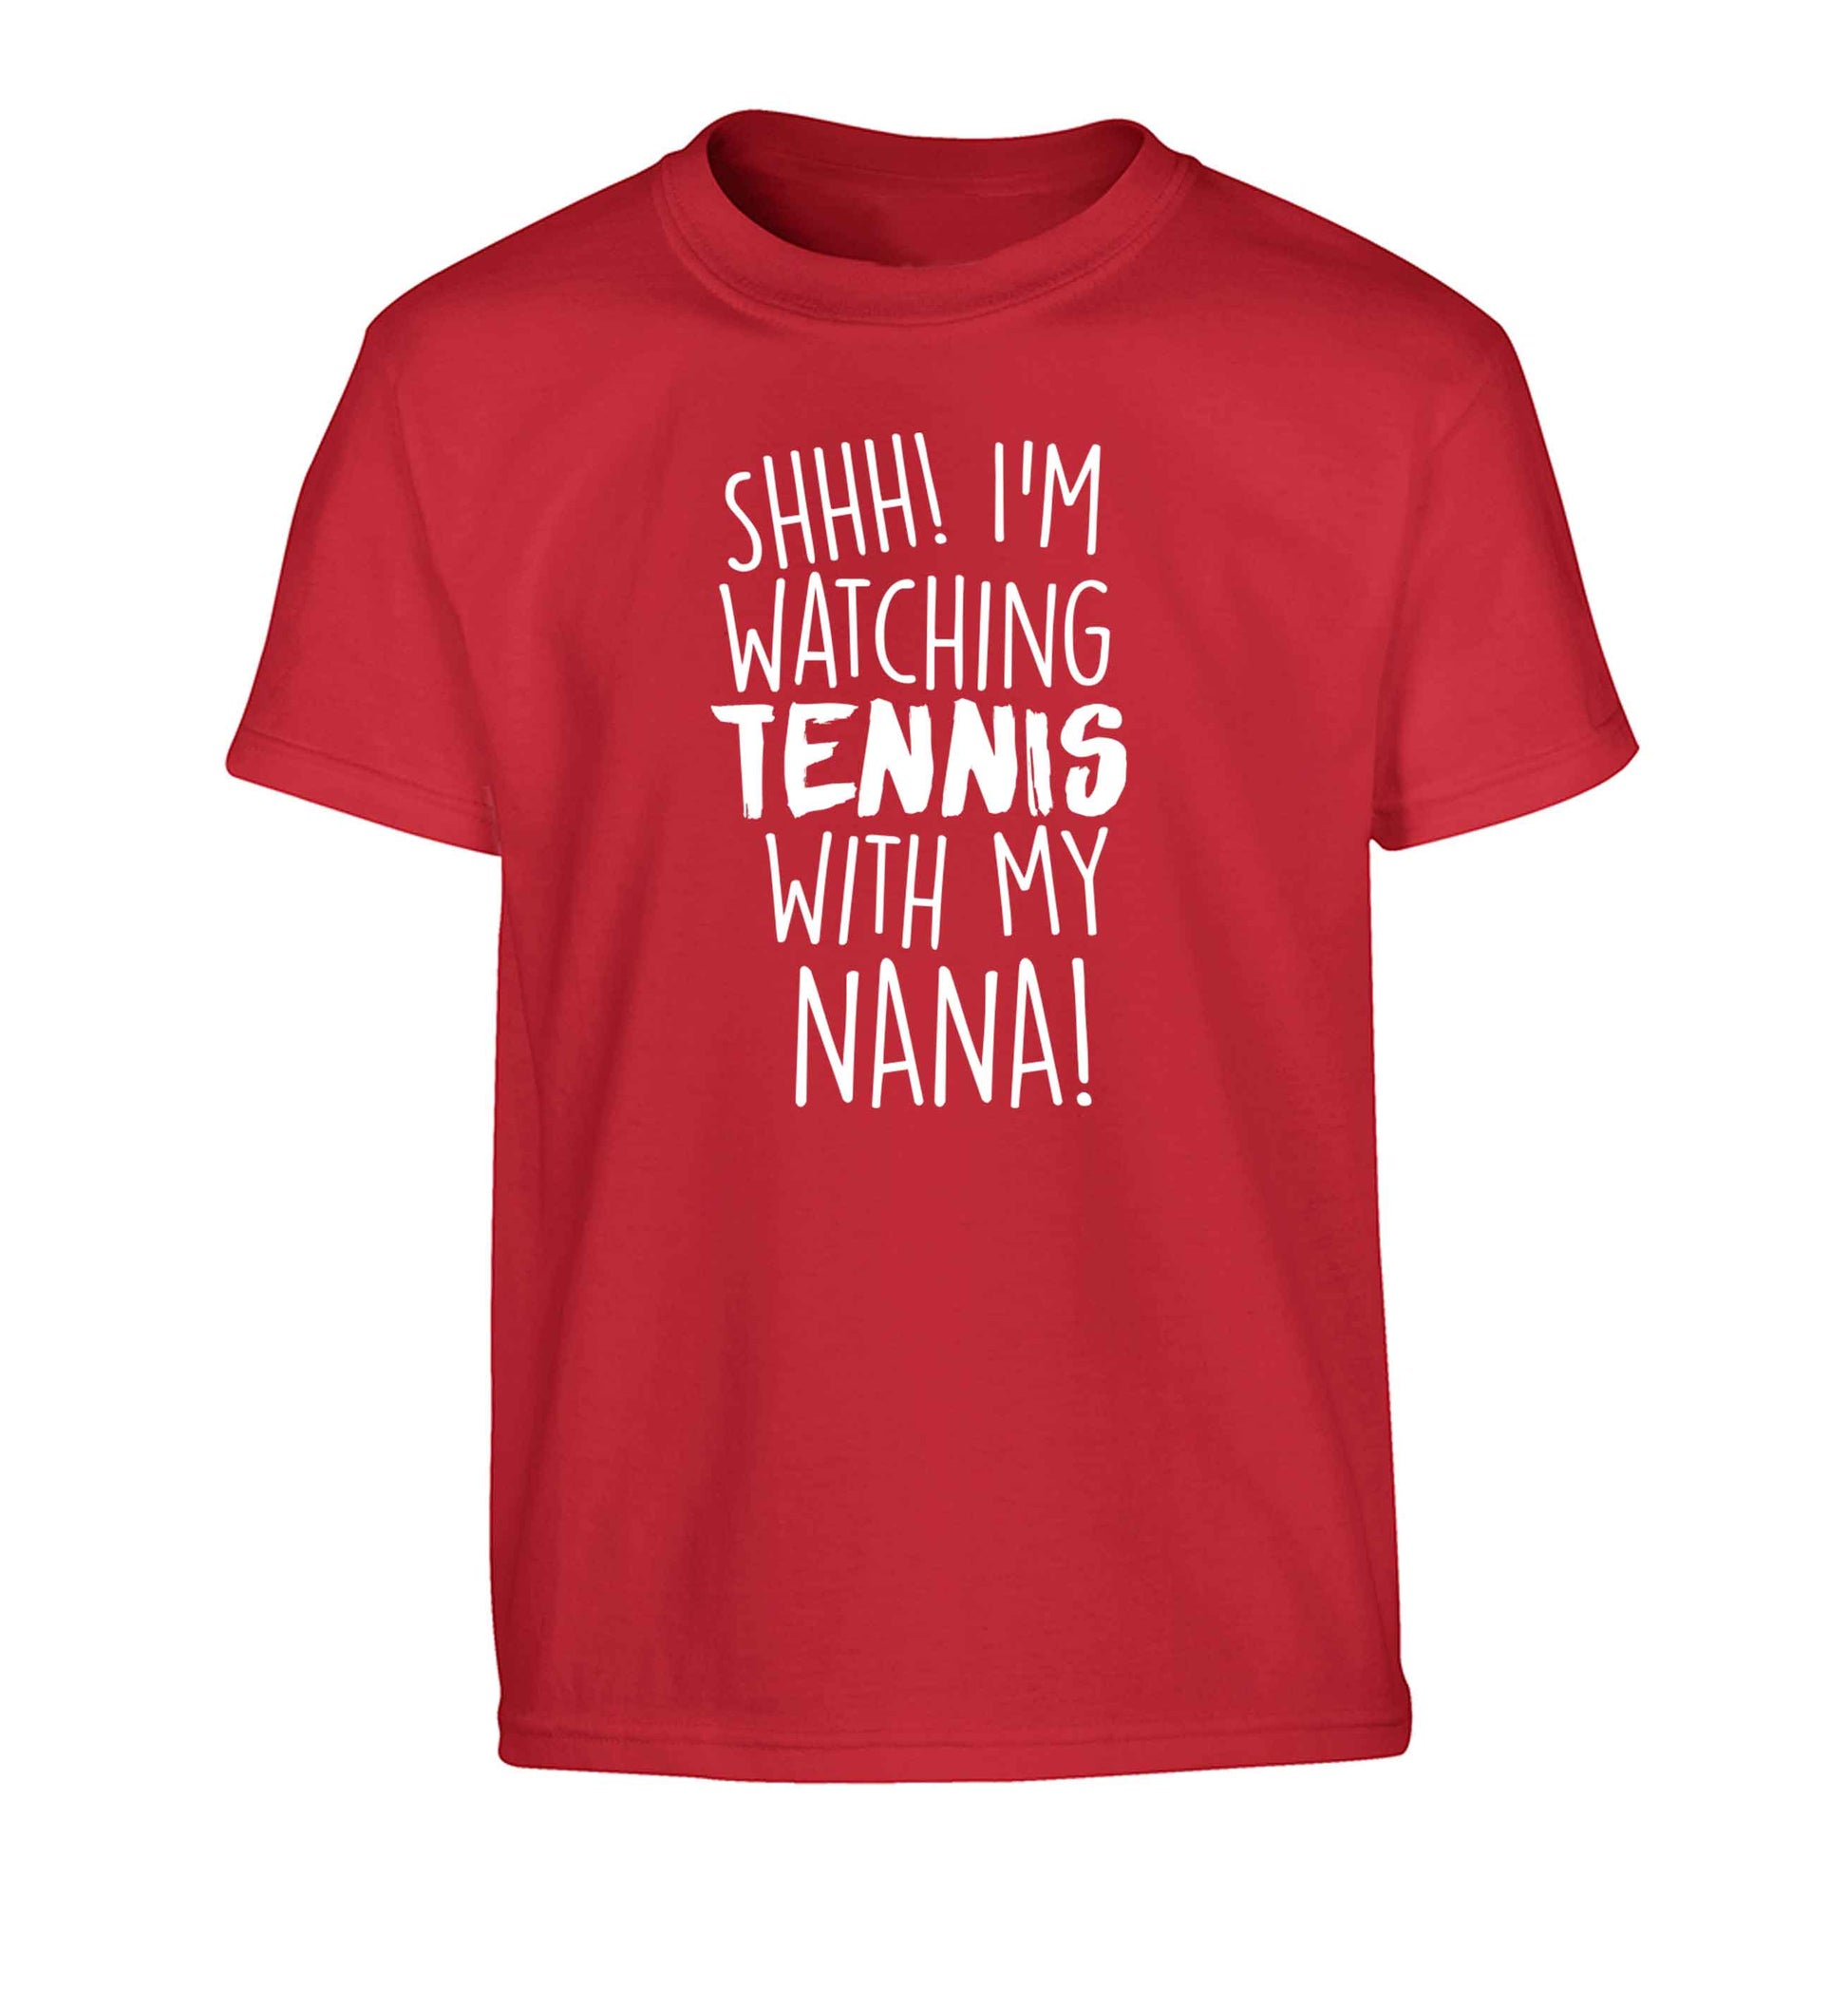 Shh! I'm watching tennis with my nana! Children's red Tshirt 12-13 Years